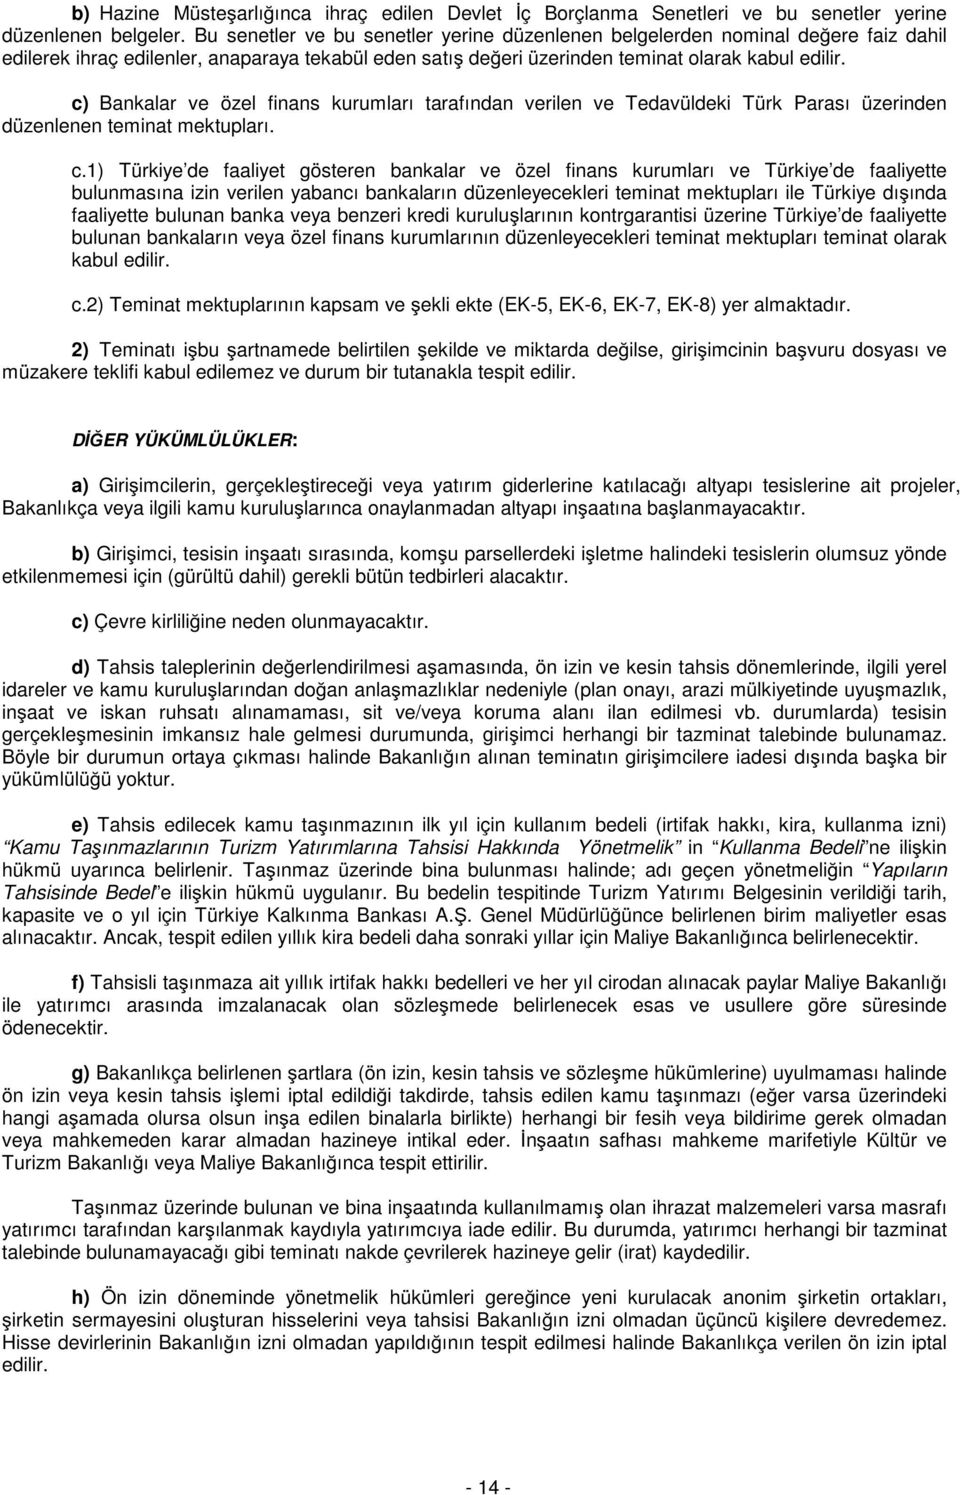 c) Bankalar ve özel finans kurumları tarafından verilen ve Tedavüldeki Türk Parası üzerinden düzenlenen teminat mektupları. c.